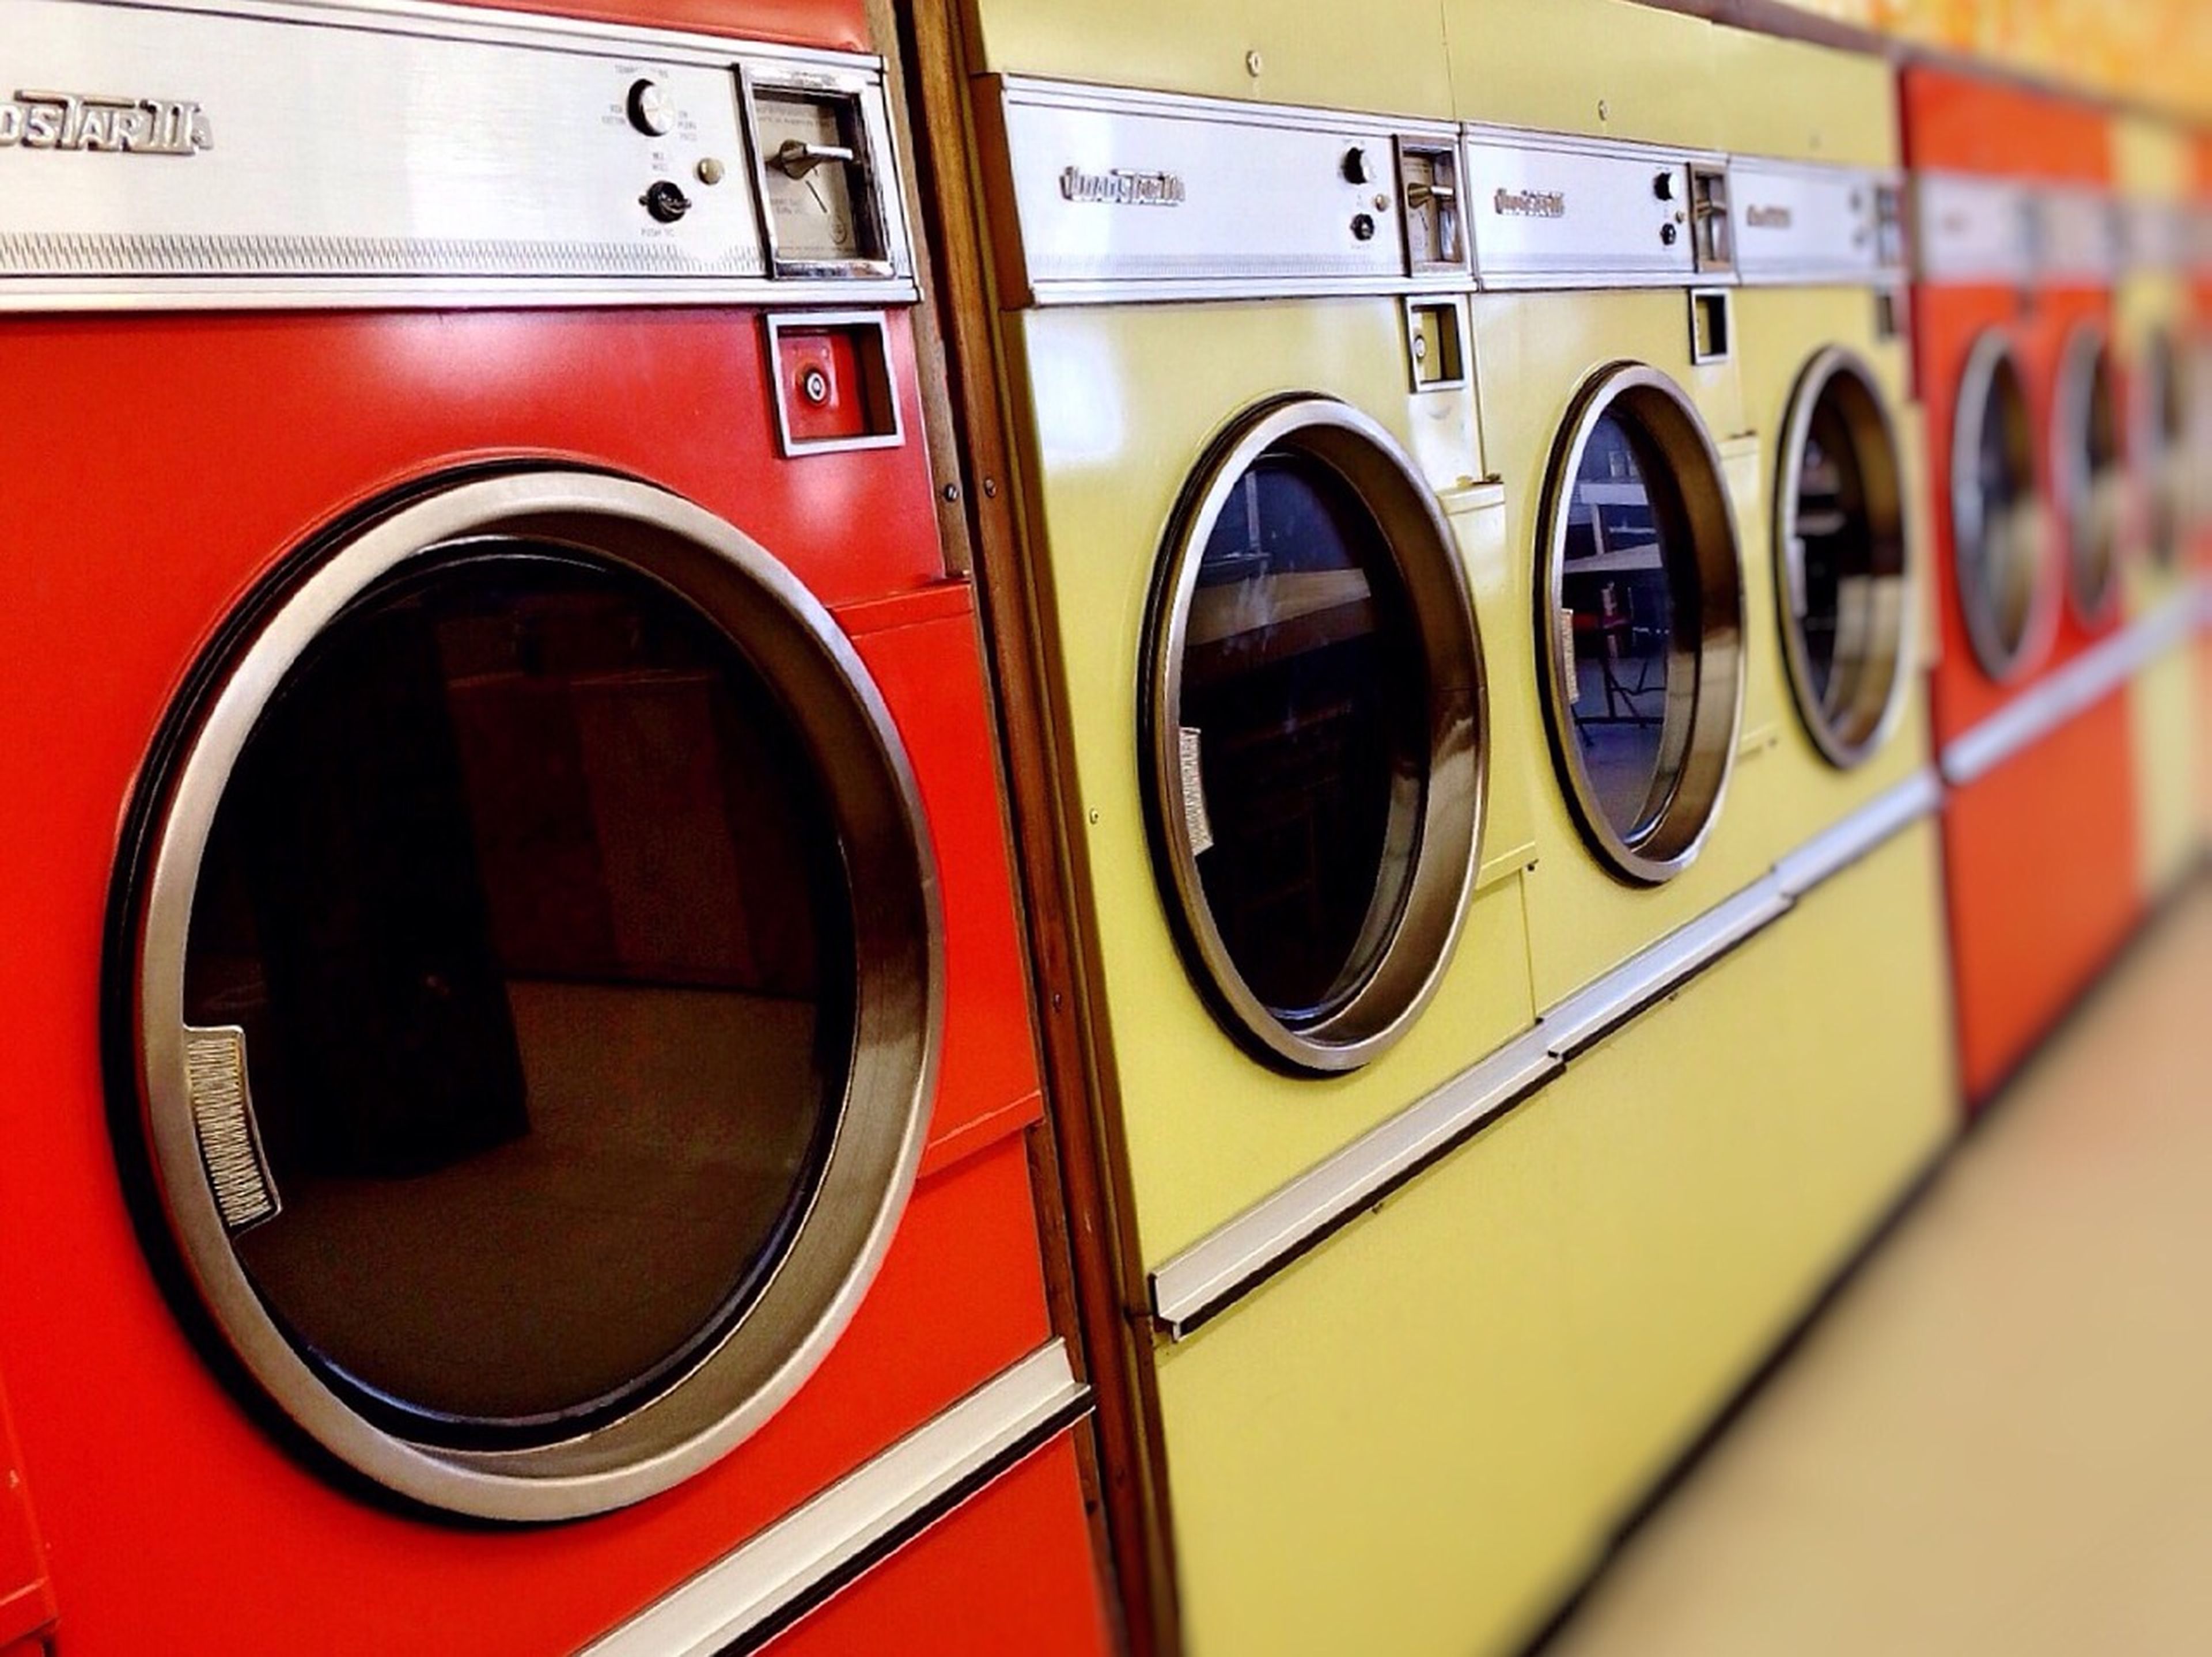 Las secadoras consumen cuatro veces más que las lavadoras